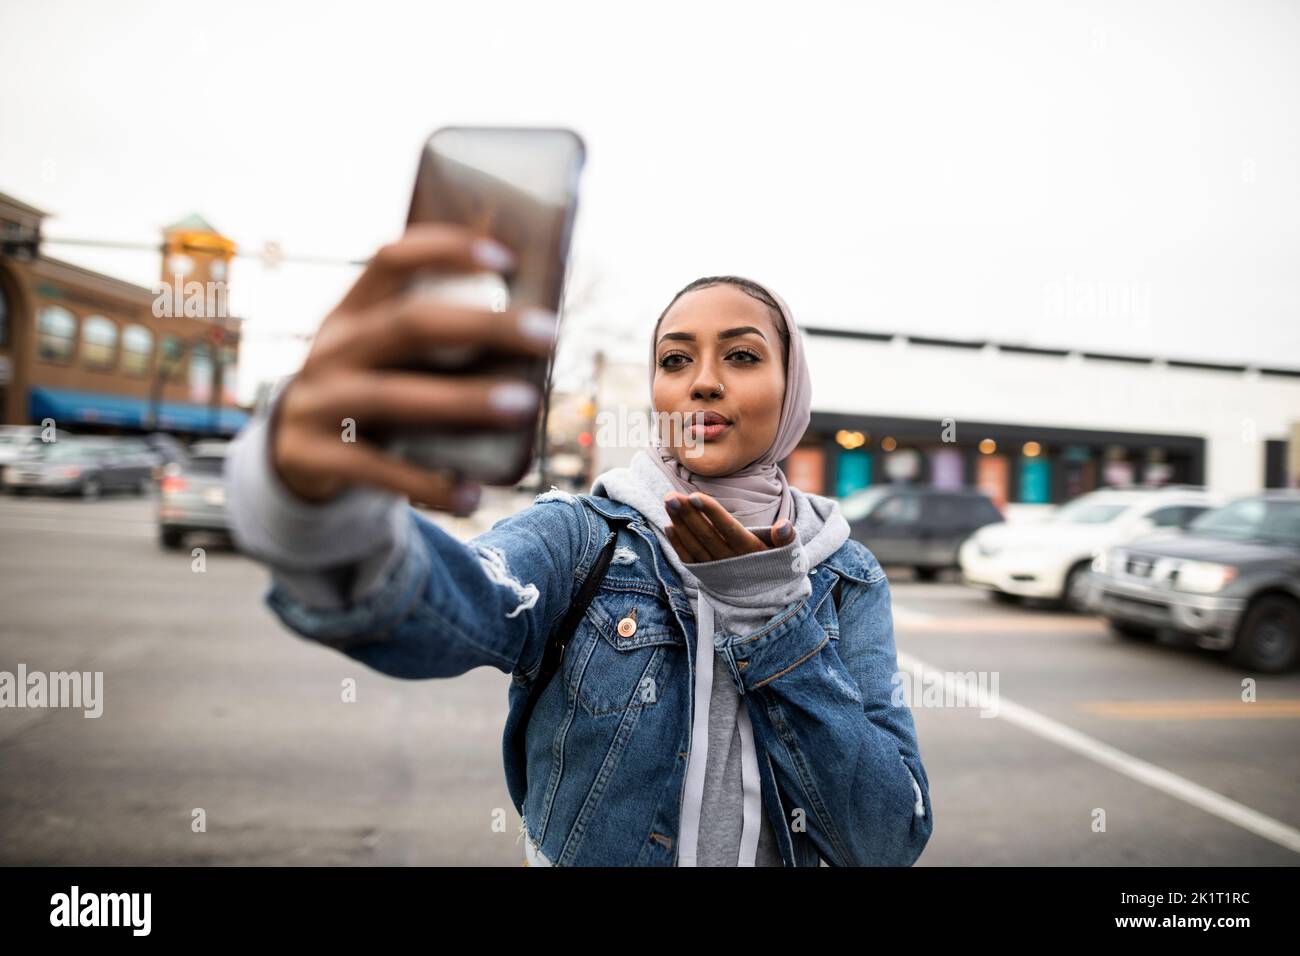 Une jeune femme prend un selfie avec un téléphone photo, soufflant un baiser dans la rue urbaine Banque D'Images